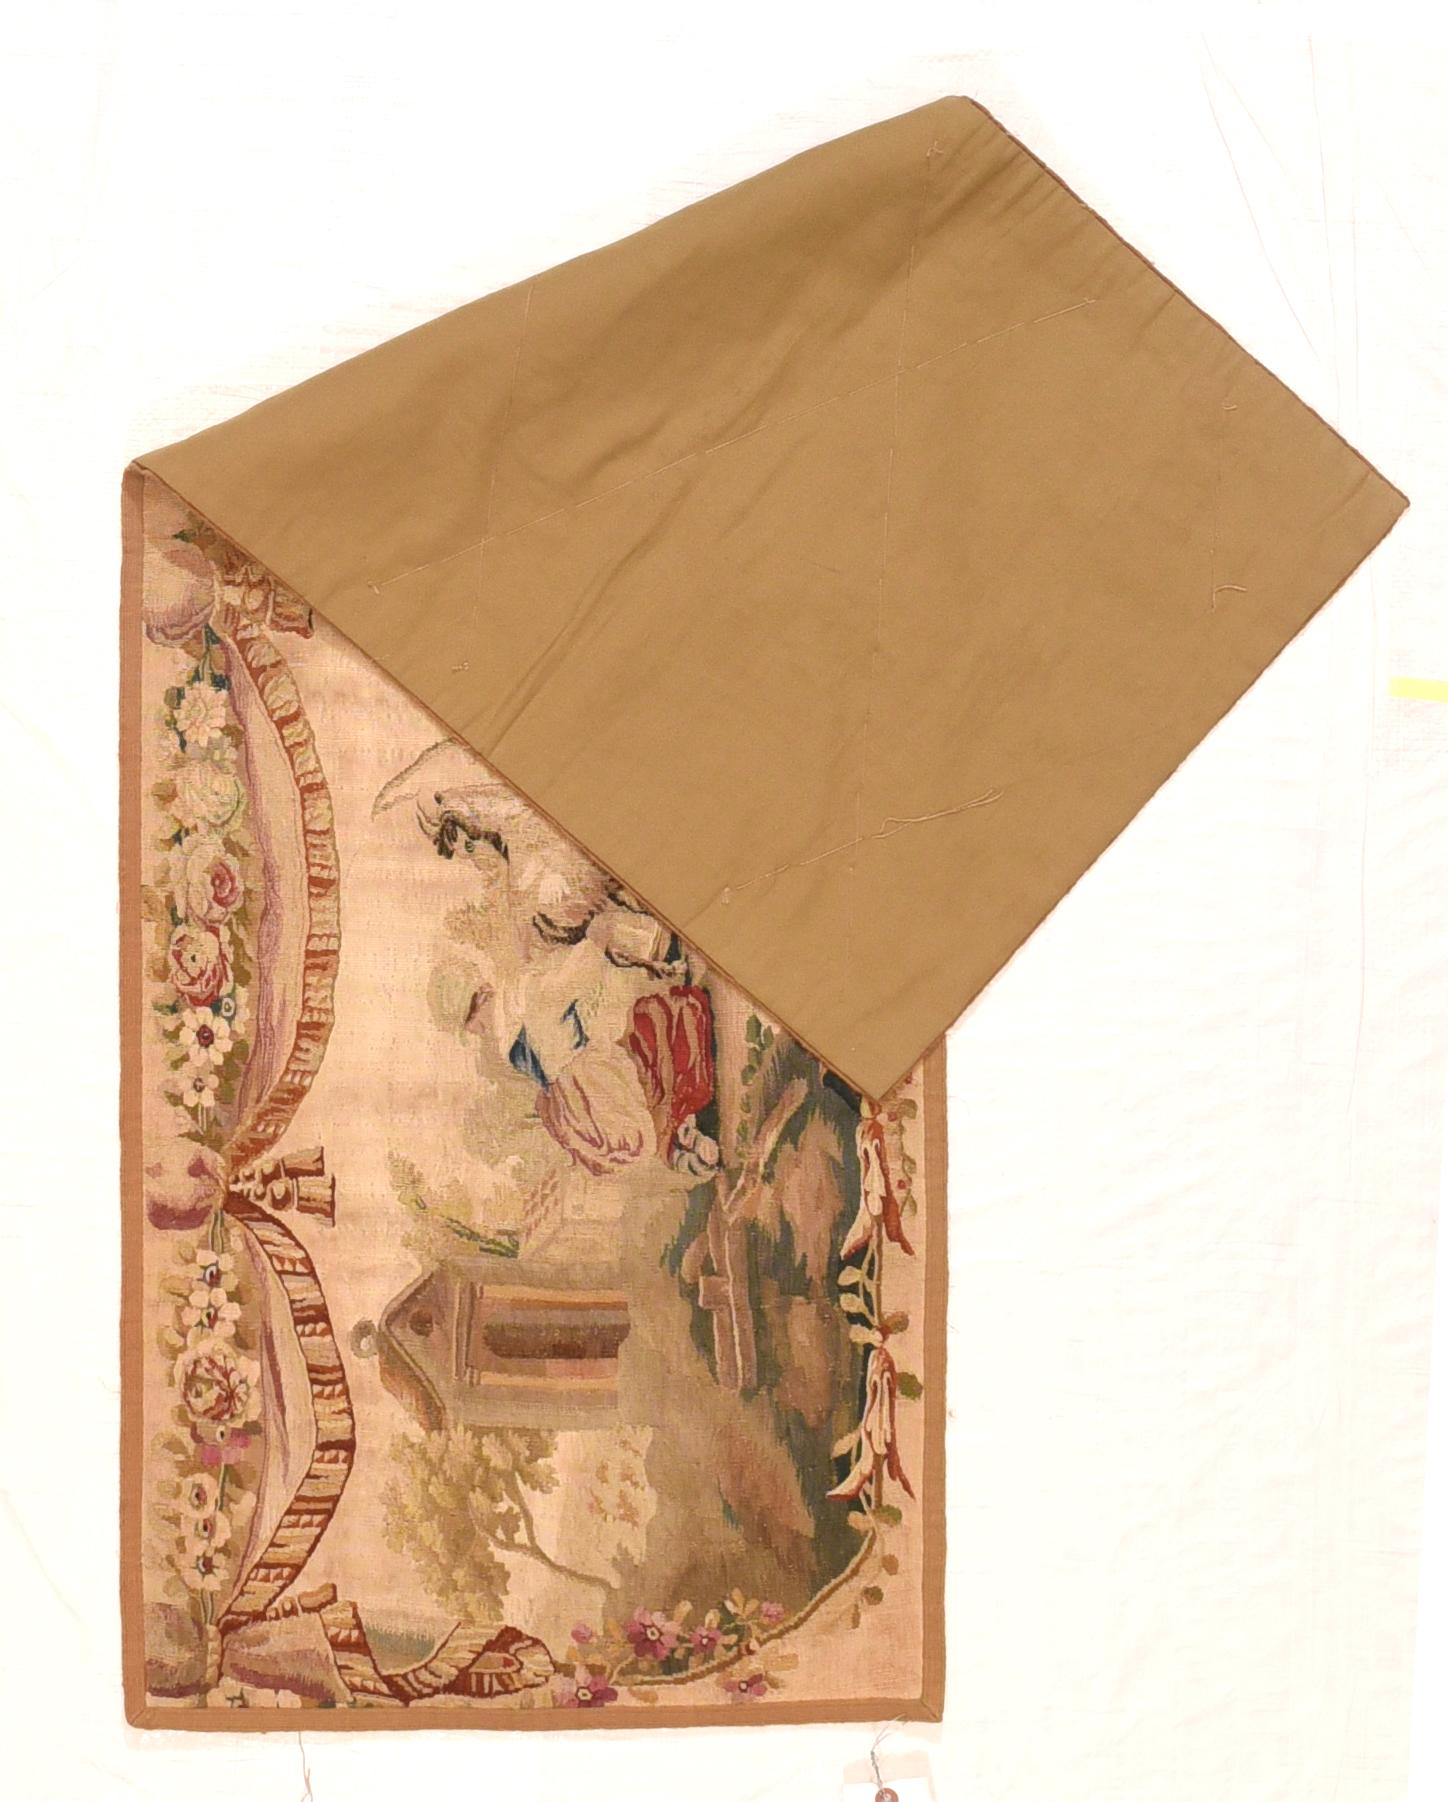 La manufactura de tapices de Aubusson de los siglos XVII y XVIII consiguió competir con la manufactura real de tapices de Gobelins y la posición privilegiada de los tapices de Beauvais. La fabricación de tapices en Aubusson, en el alto valle del